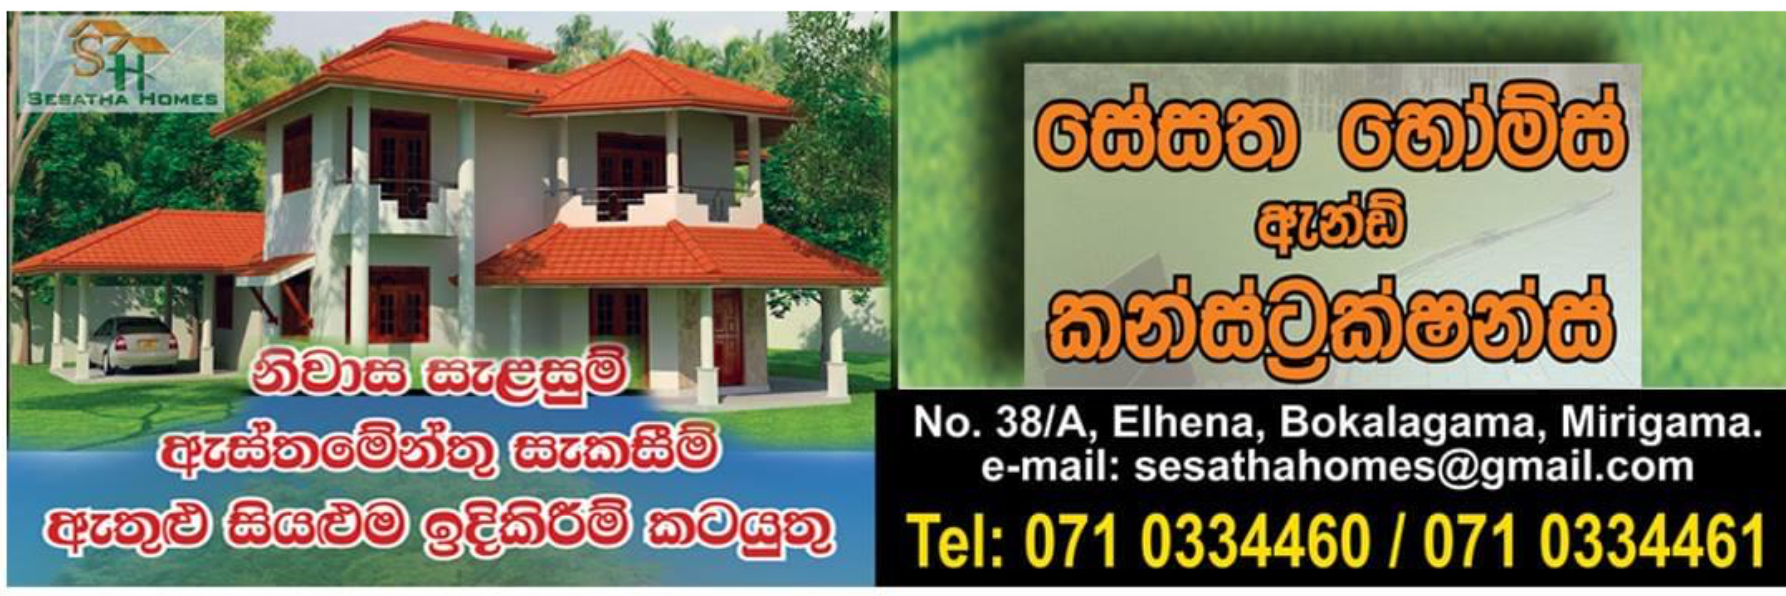 Sesatha homes and constructions logo